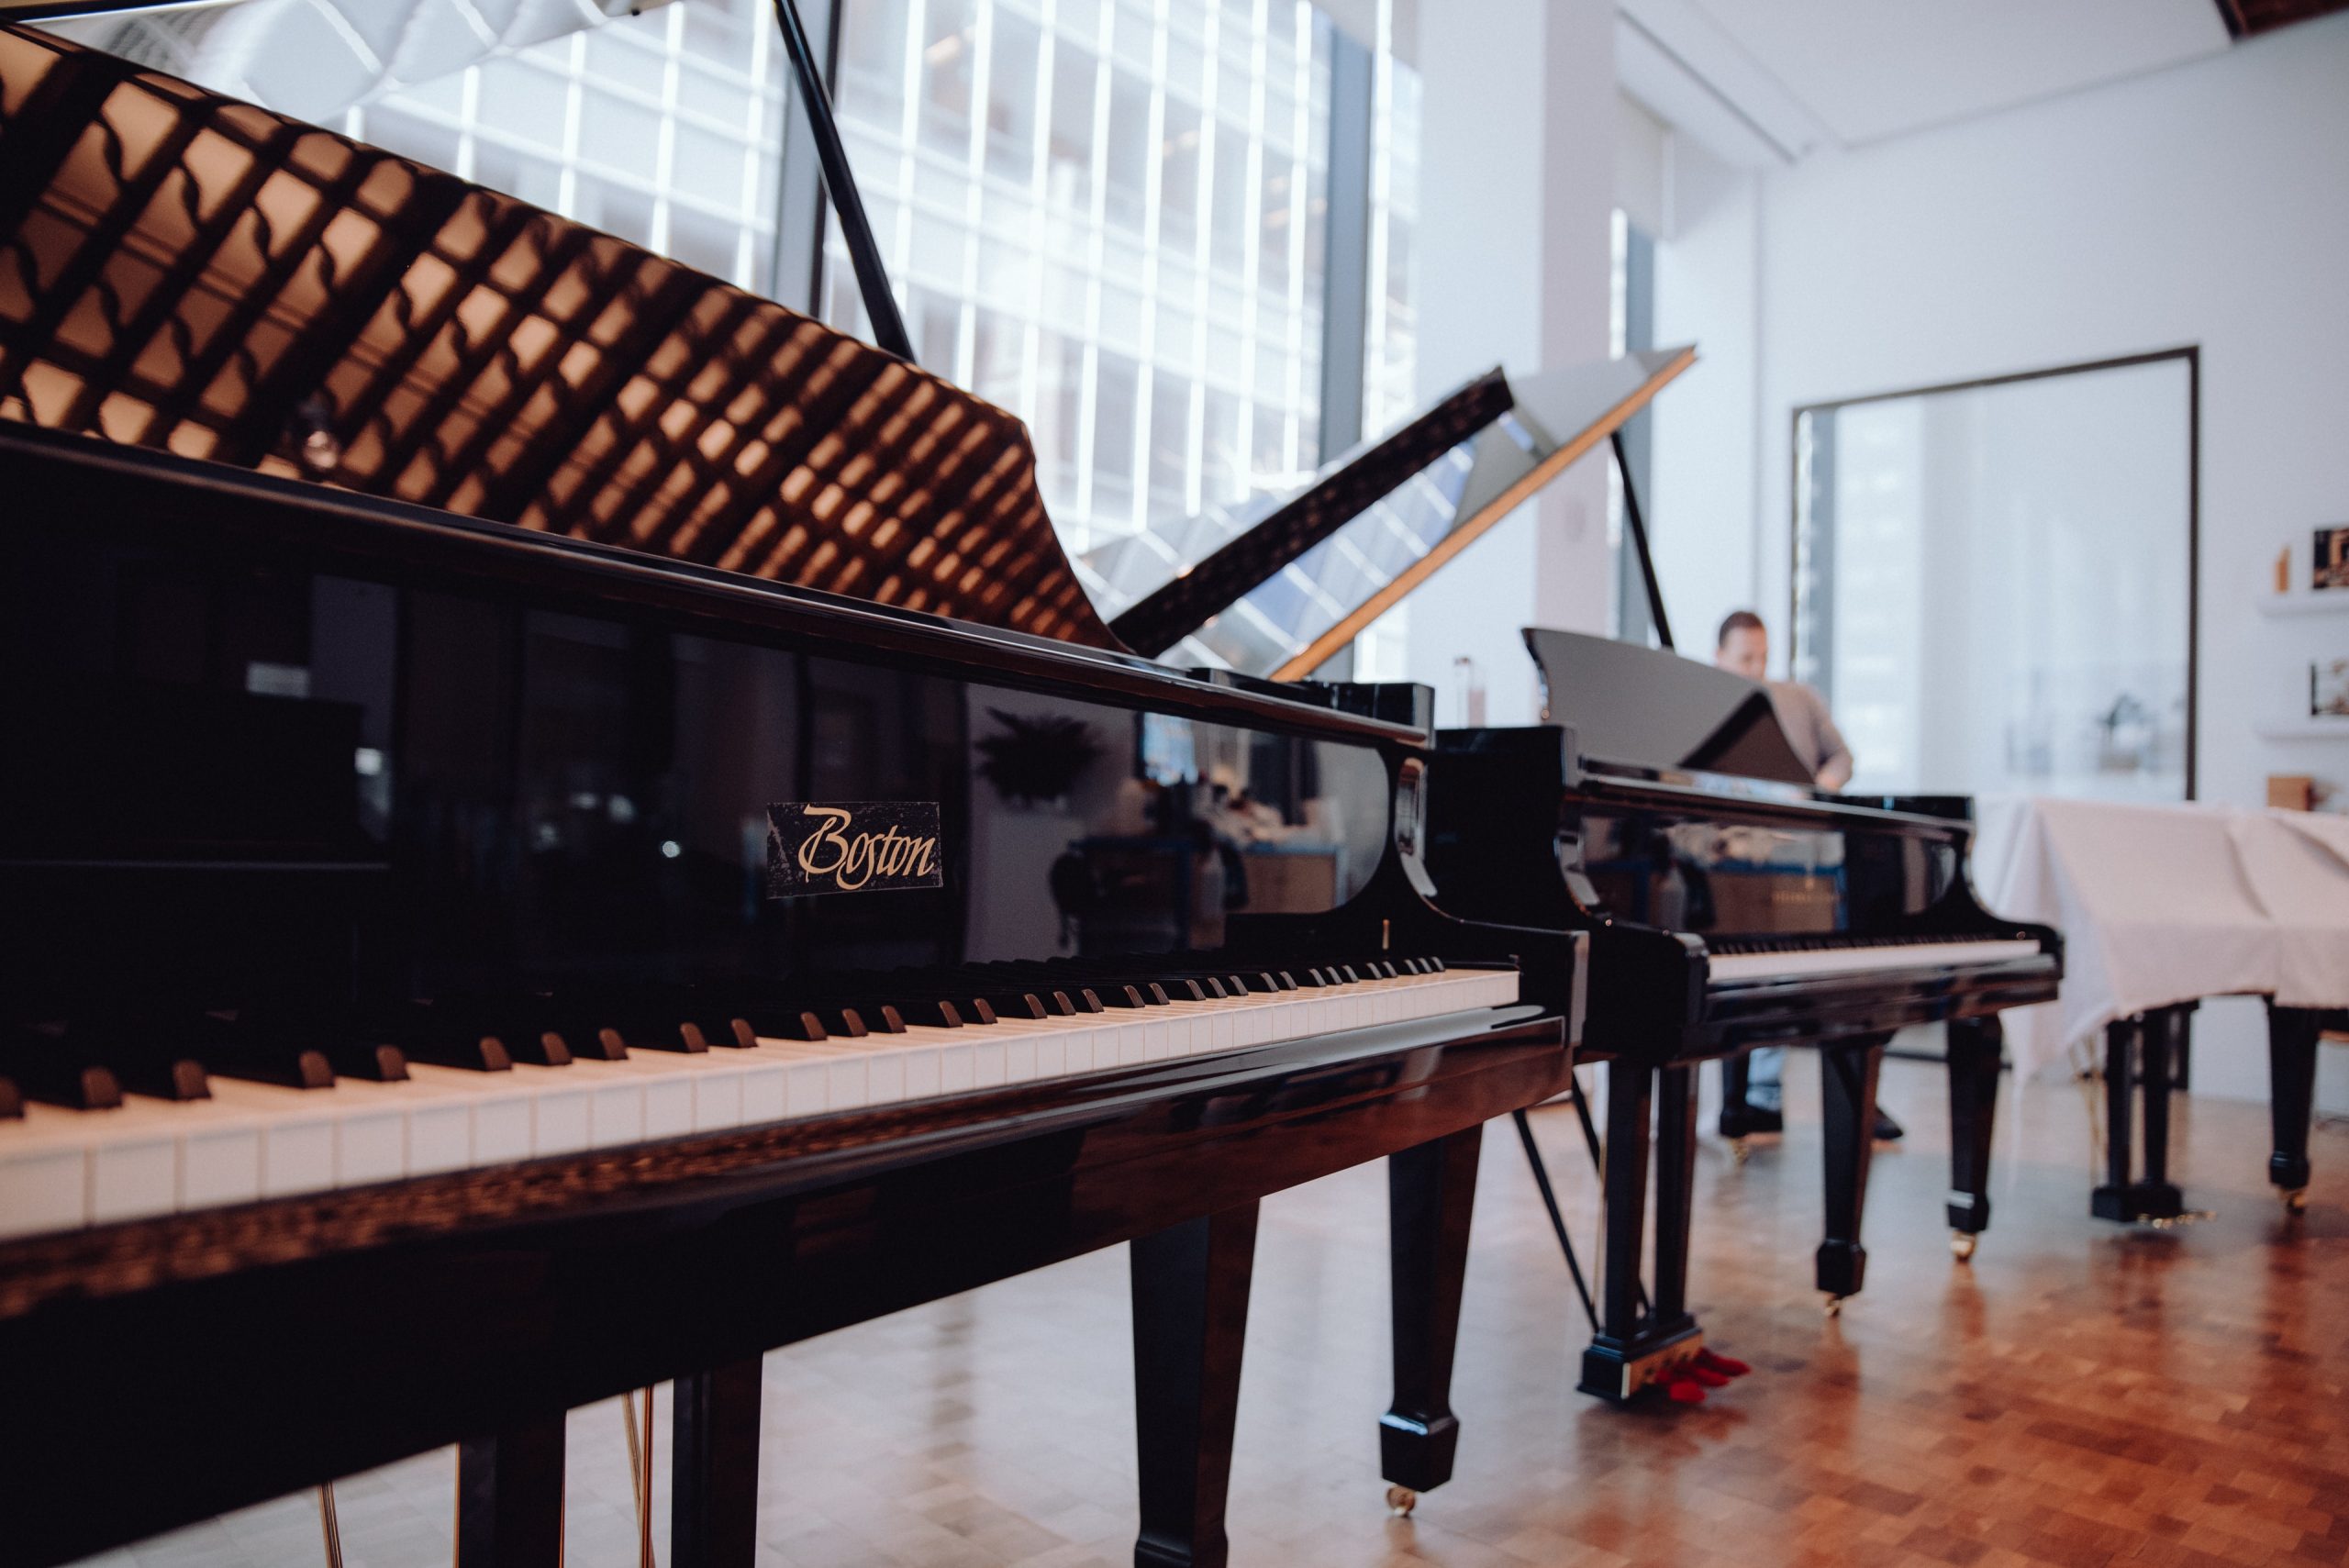 Essex vs. Boston: ein Einkaufsführer für Klavierliebhaber